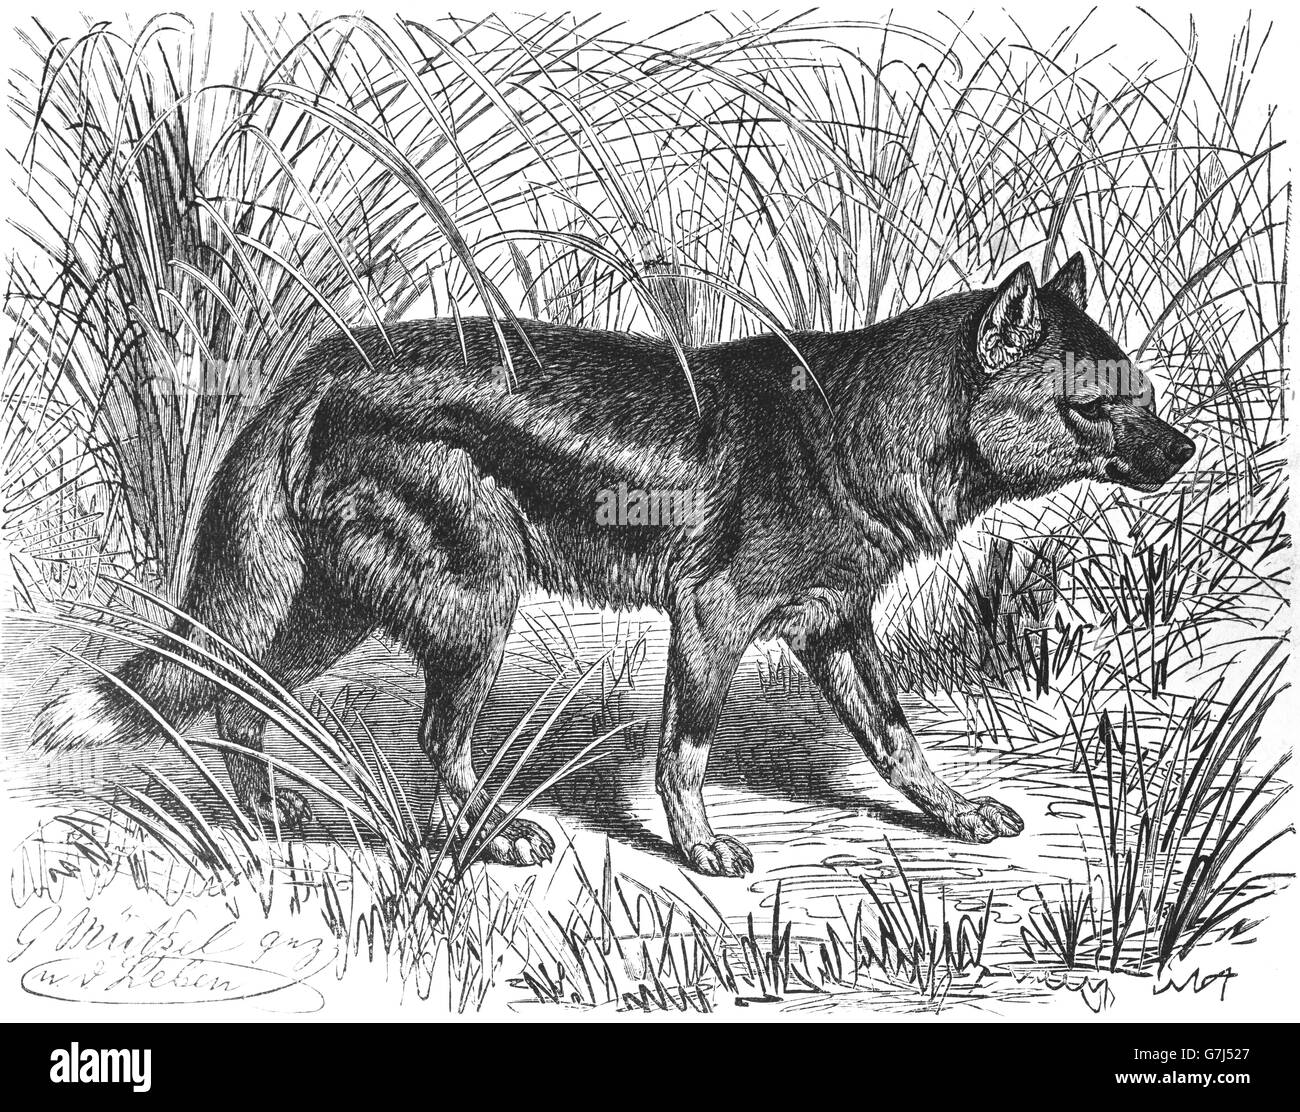 À rayures latérales, chacal Canis adustus, Caninae, illustration de livre daté 1904 Banque D'Images